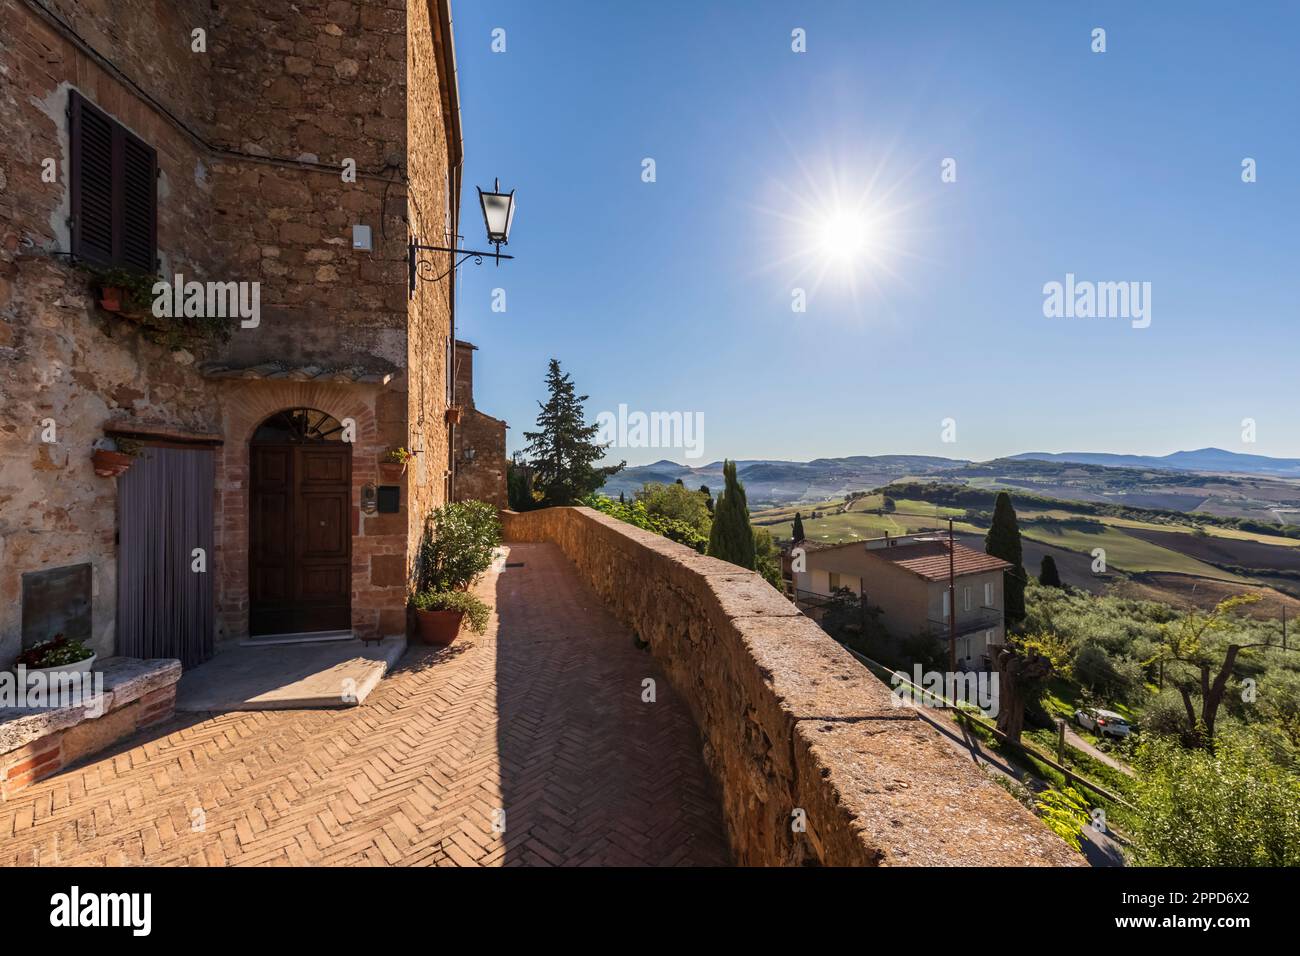 Italy, Tuscany, Pienza, Sun shining over edge of historic town Stock Photo